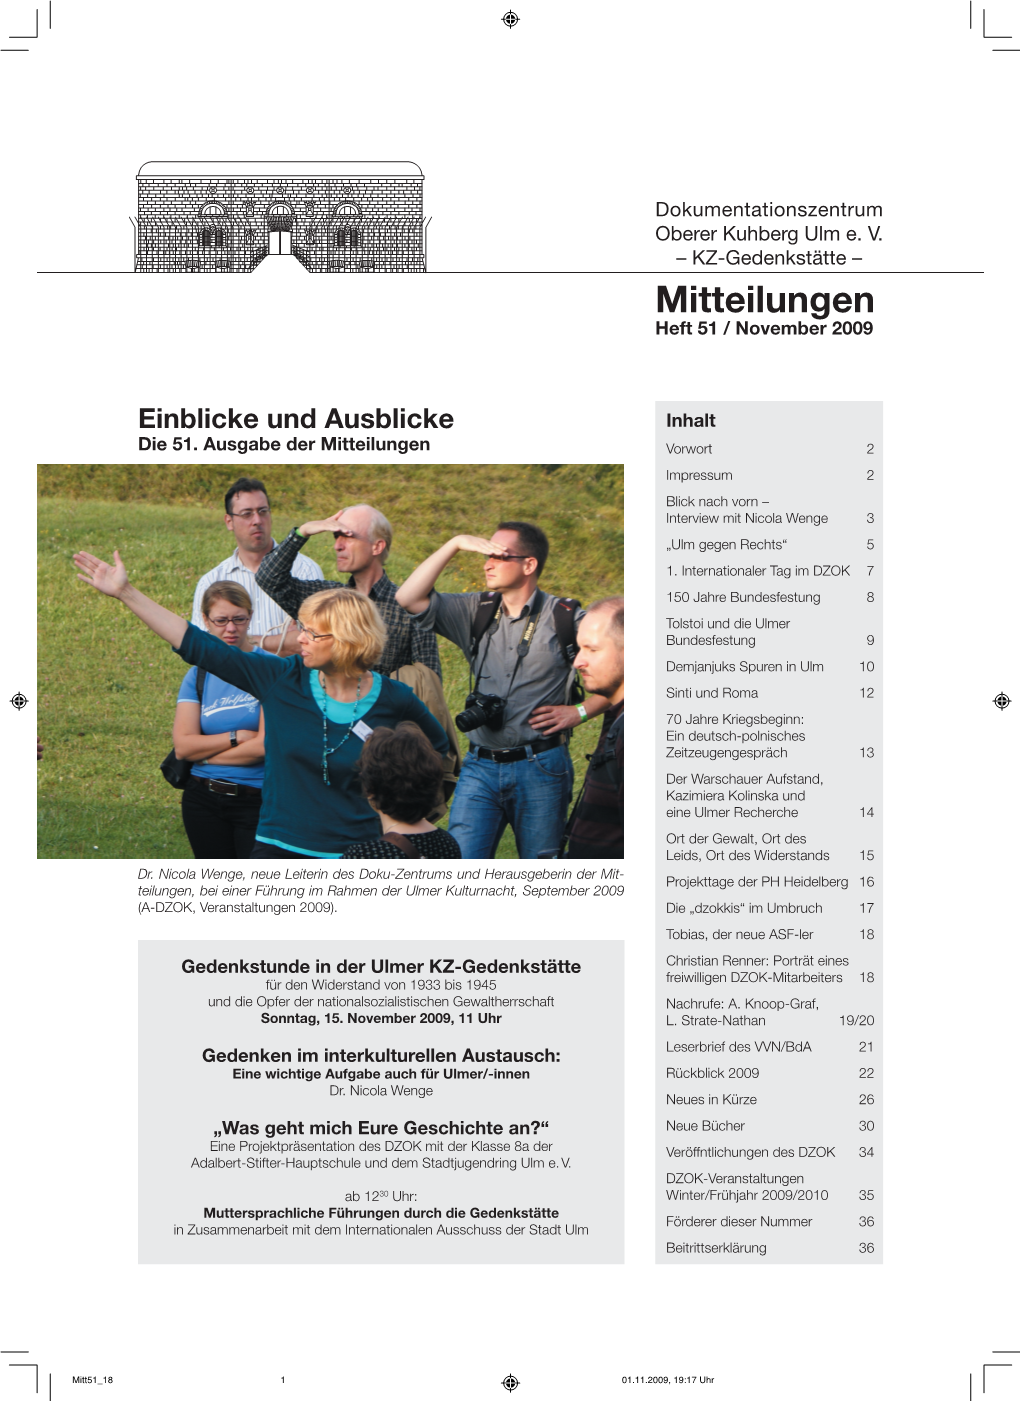 Mitteilungen Heft 51 / November 2009